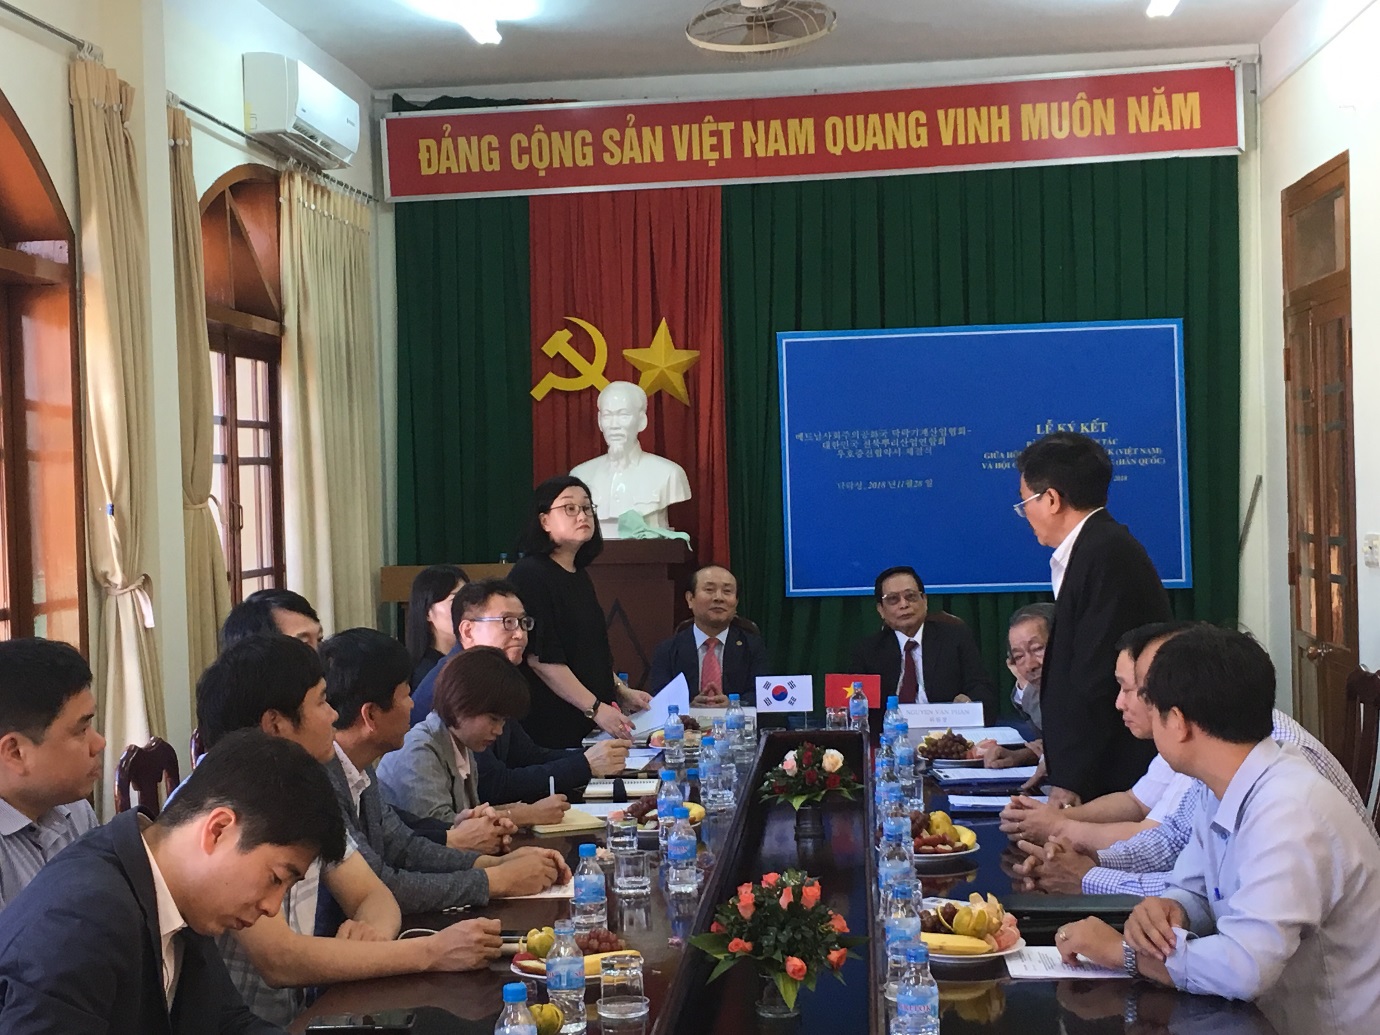 Chương trình hợp tác giữa tỉnh Jeolabuk – Hàn Quốc với tỉnh Đắk Lắk - Việt Nam về hỗ trợ phát triển ngành công nghiệp cơ khí